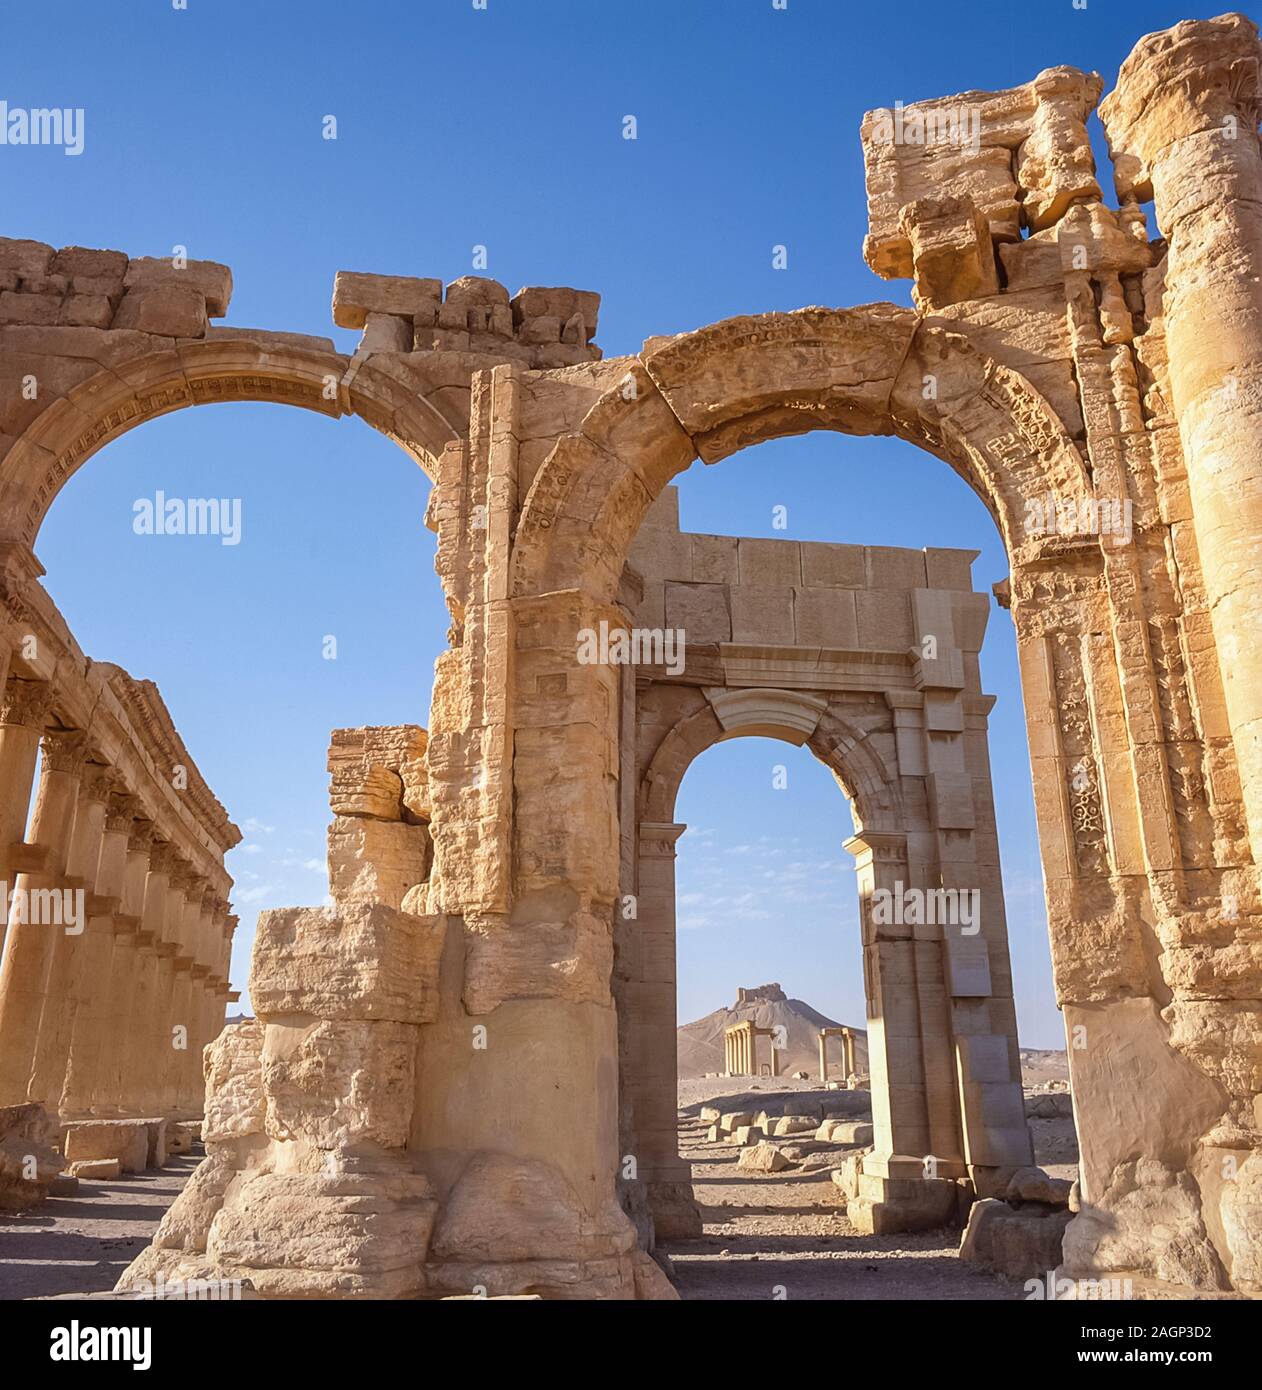 Syrien. Die Ruinen der römischen Stadt Palmyra, die um 200 bis 250 n. Chr. erbaut wurden, projizierten große Ausmaße und Wohlstand der alten Welt unter römischer Herrschaft. Die Stadt wurde von der großen Festung der Königin Zenobia übersehen, die den mentalen Zustand ständig von der Autorität des allmächtigen Roms in Frage gestellt hatte, was zur Entstehung des Wortes Zenophobie und Zenophobie führte Stockfoto